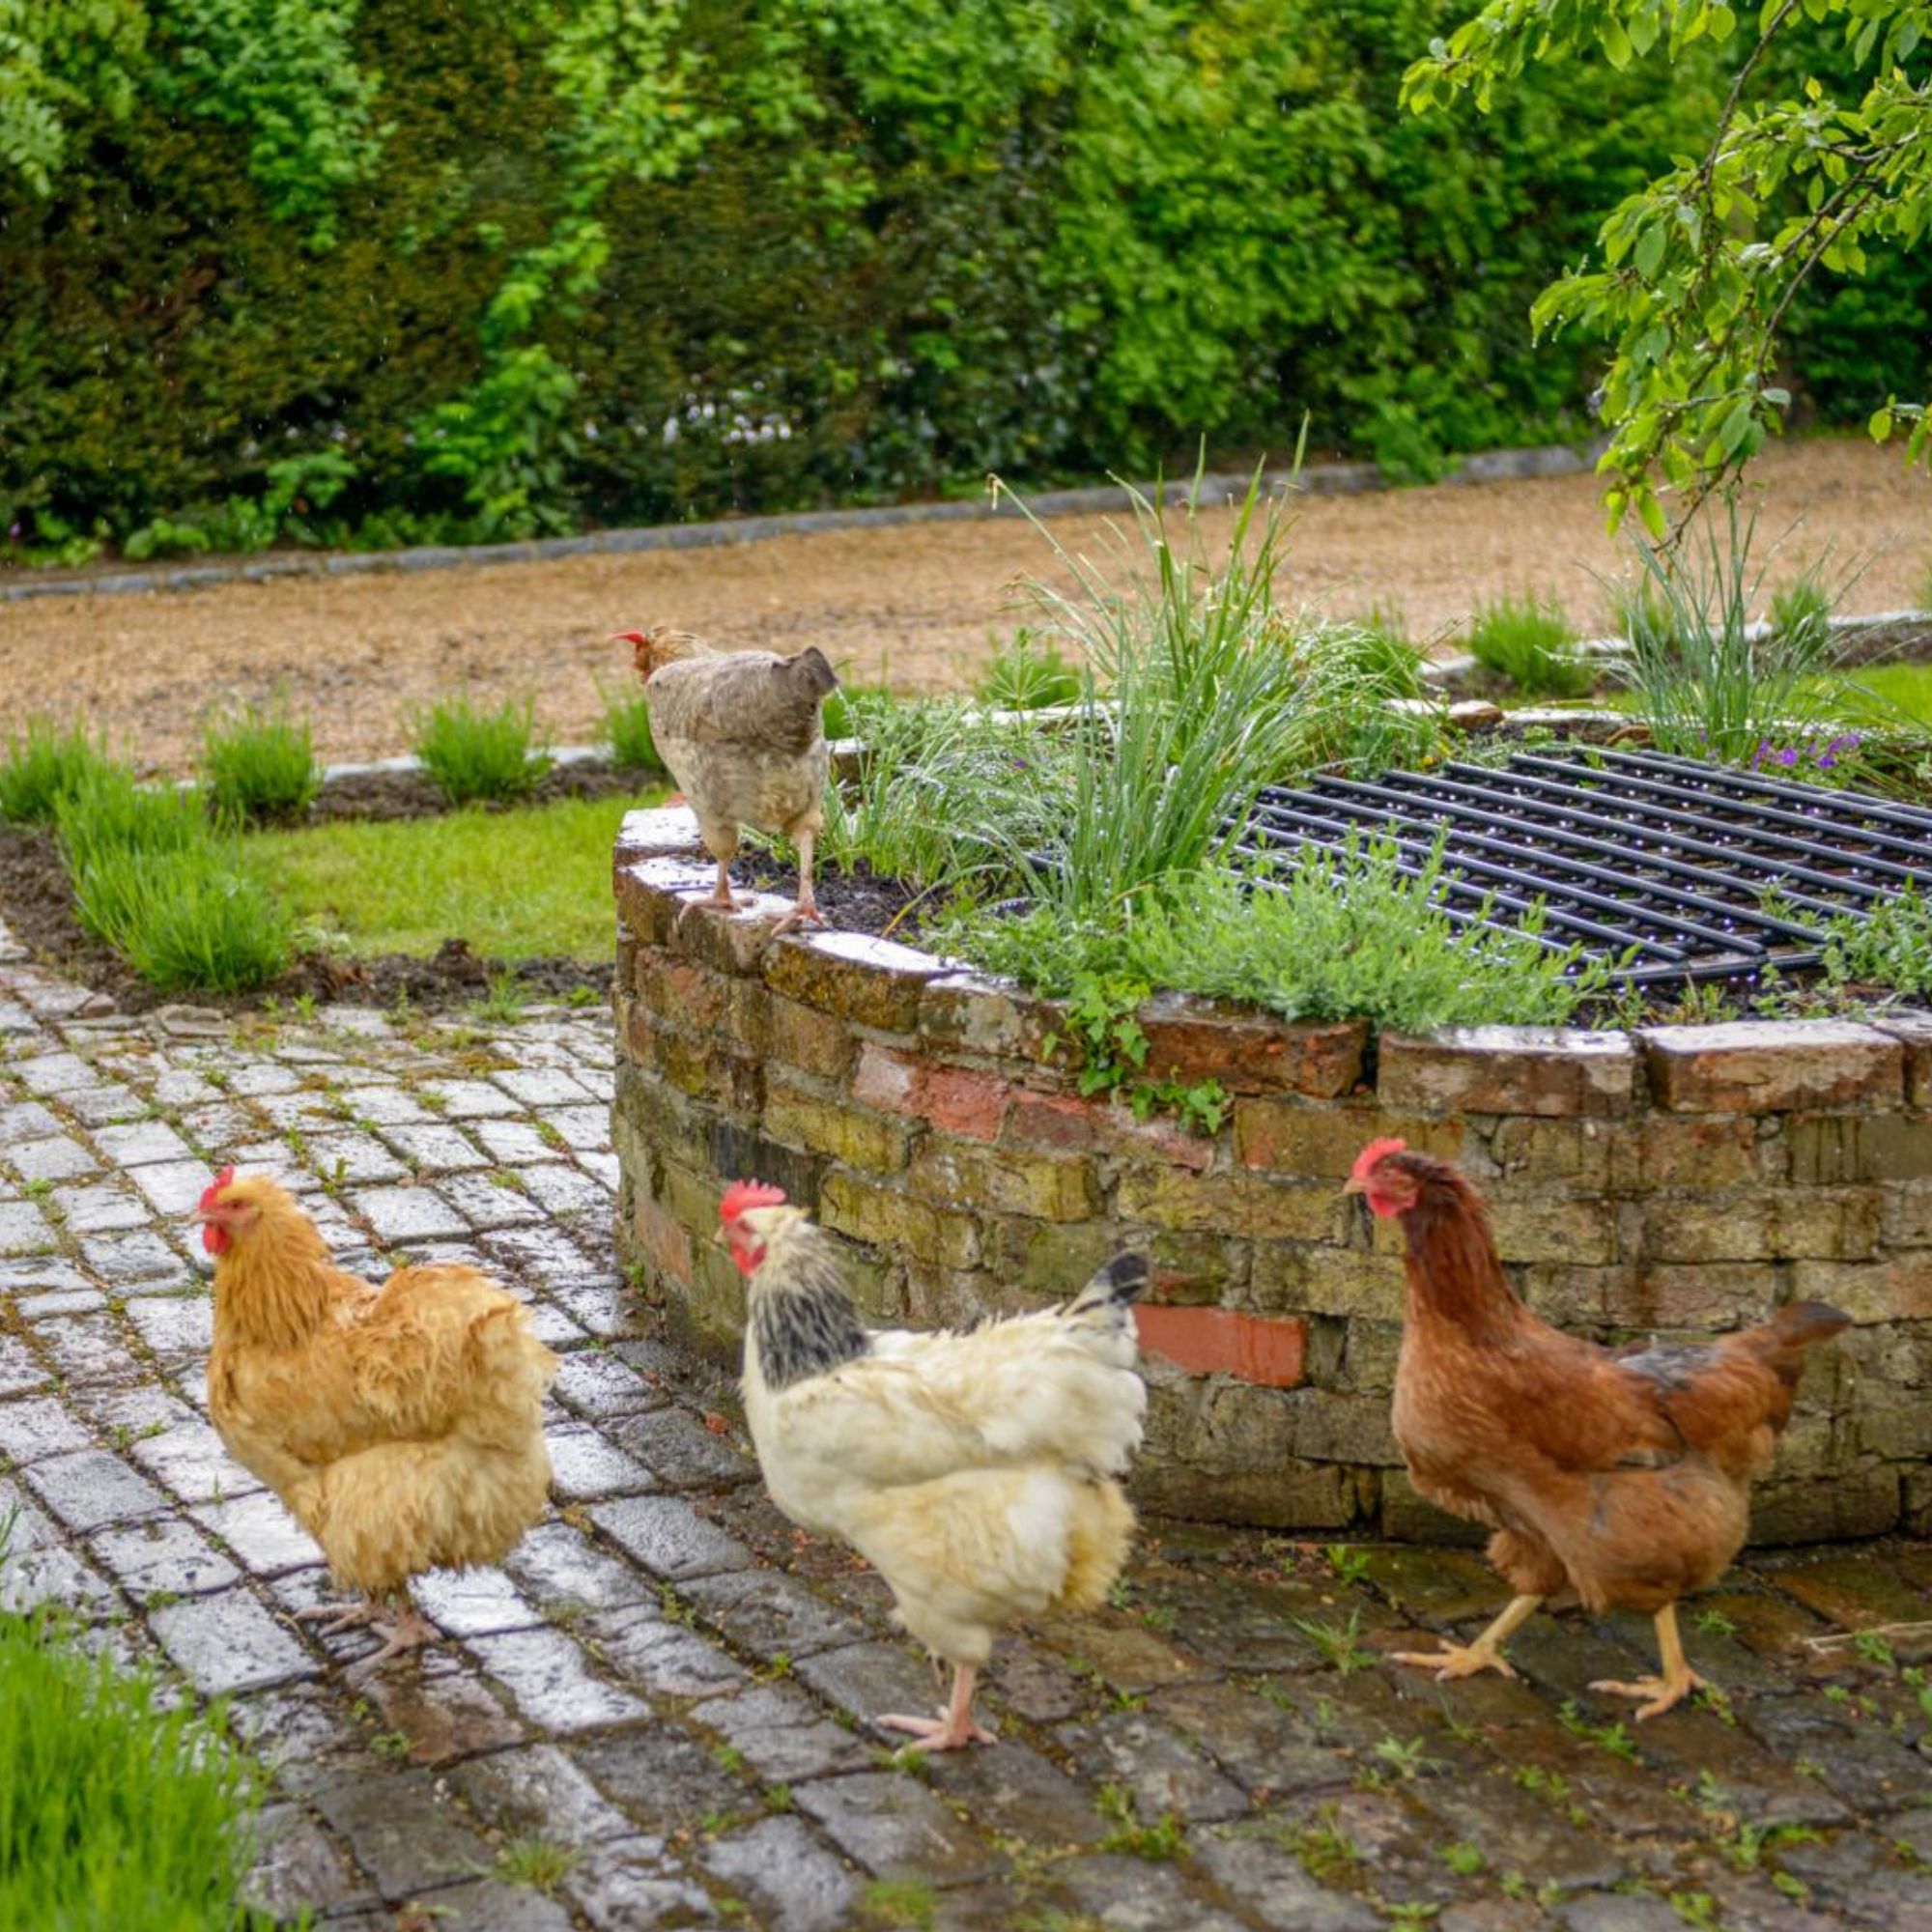 Chickens in the garden walking around a round raised flower bed in a garden